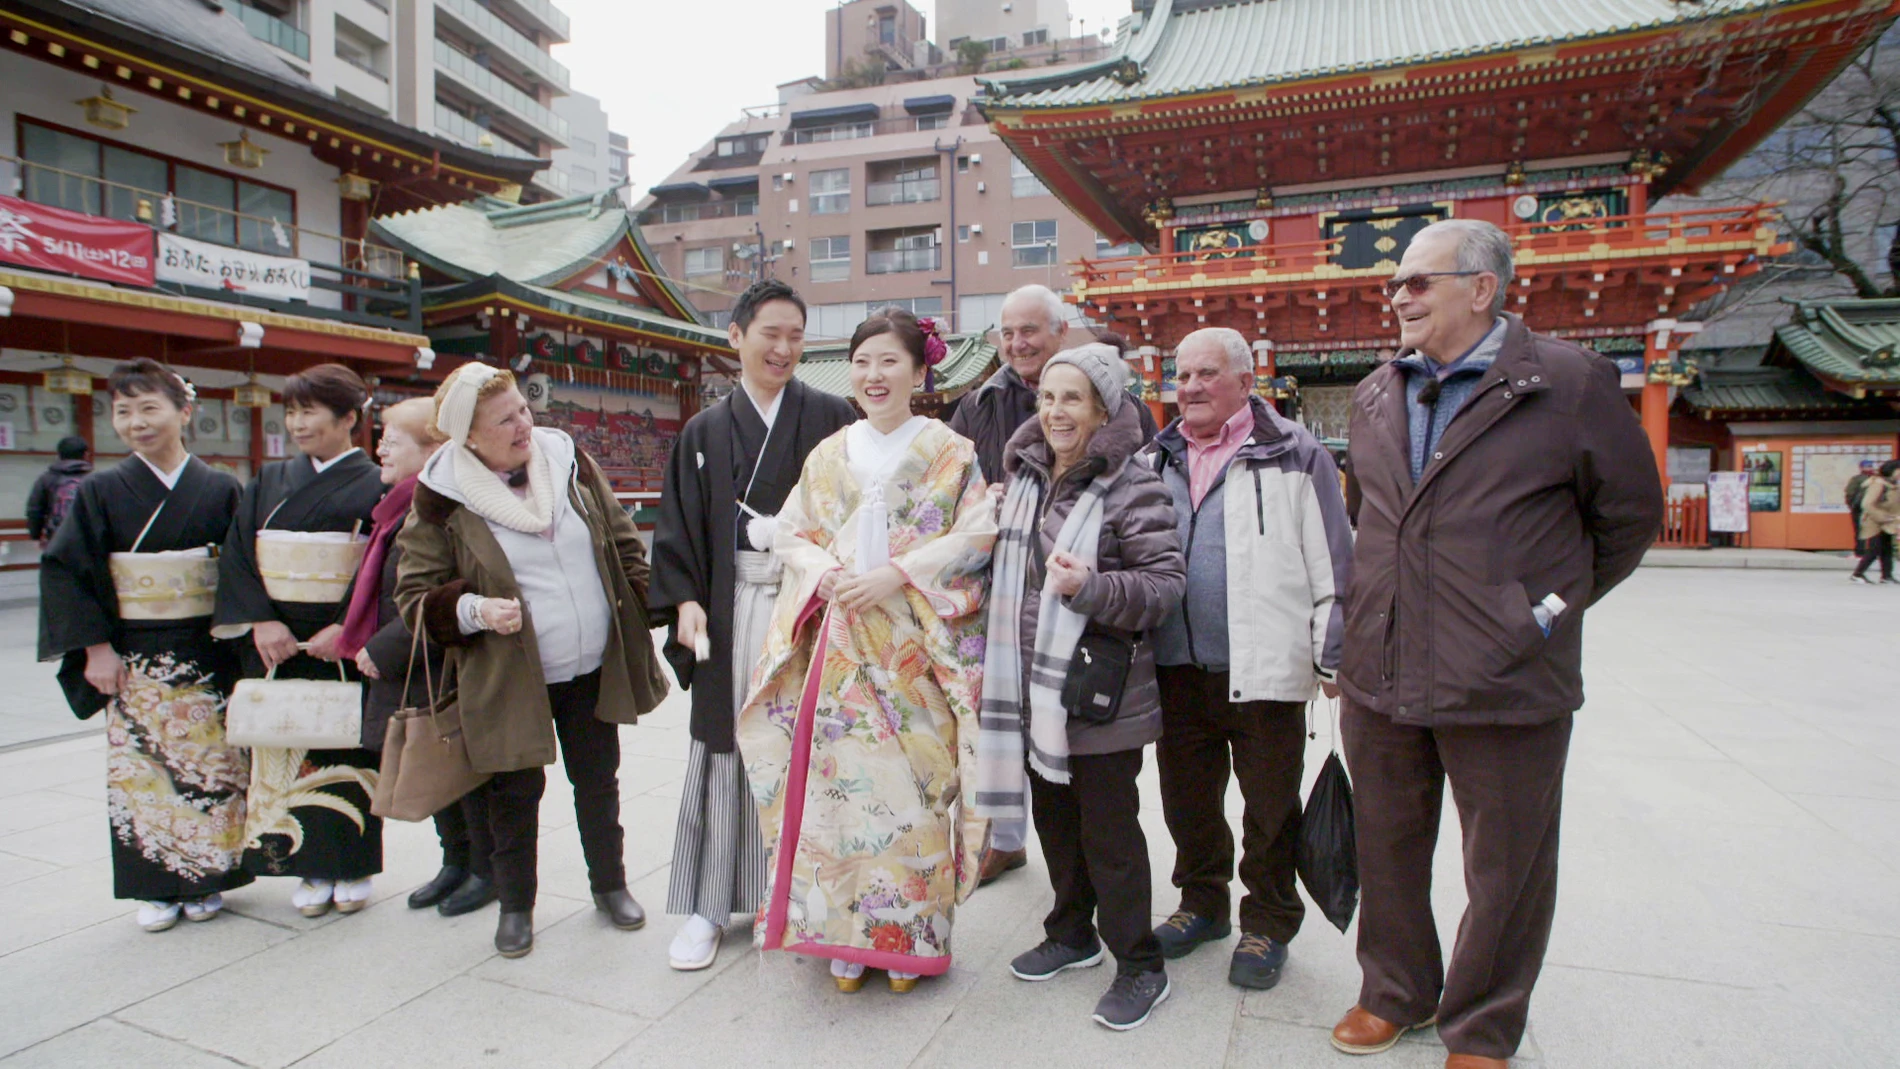 Una boda tradicional sorprende a los viajeros durante su visita a un templo en Tokio